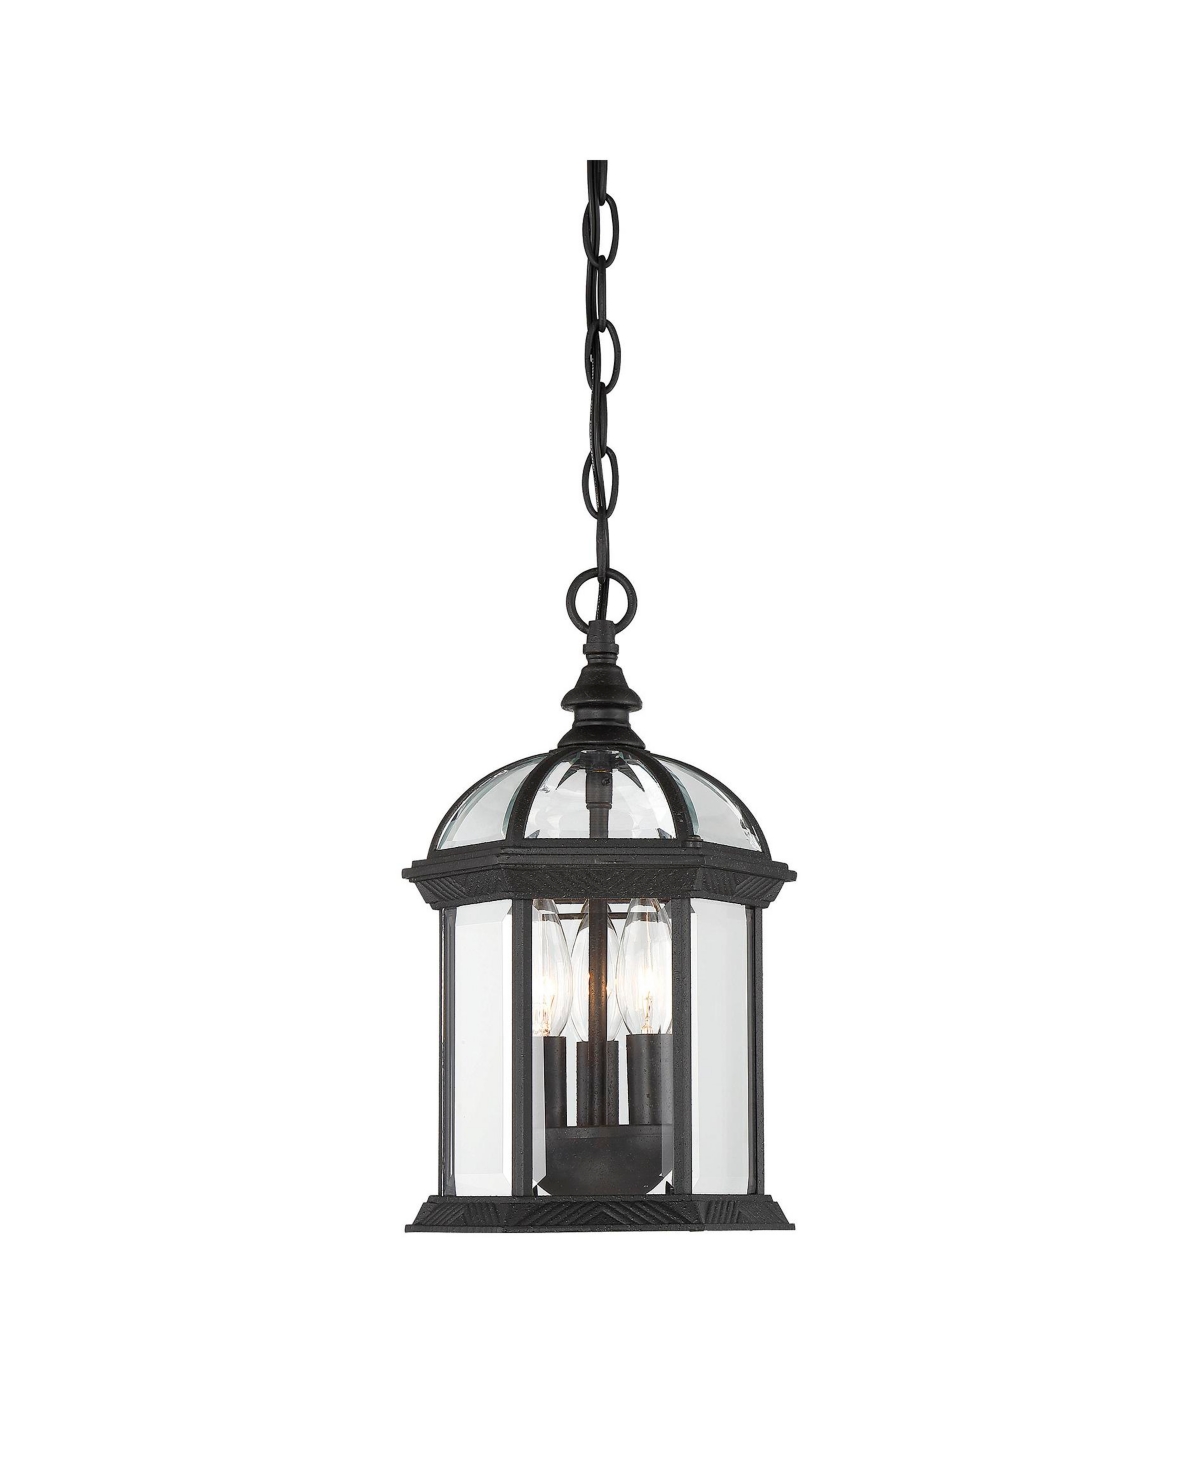 Kensington Outdoor Hanging Lantern - Textured black